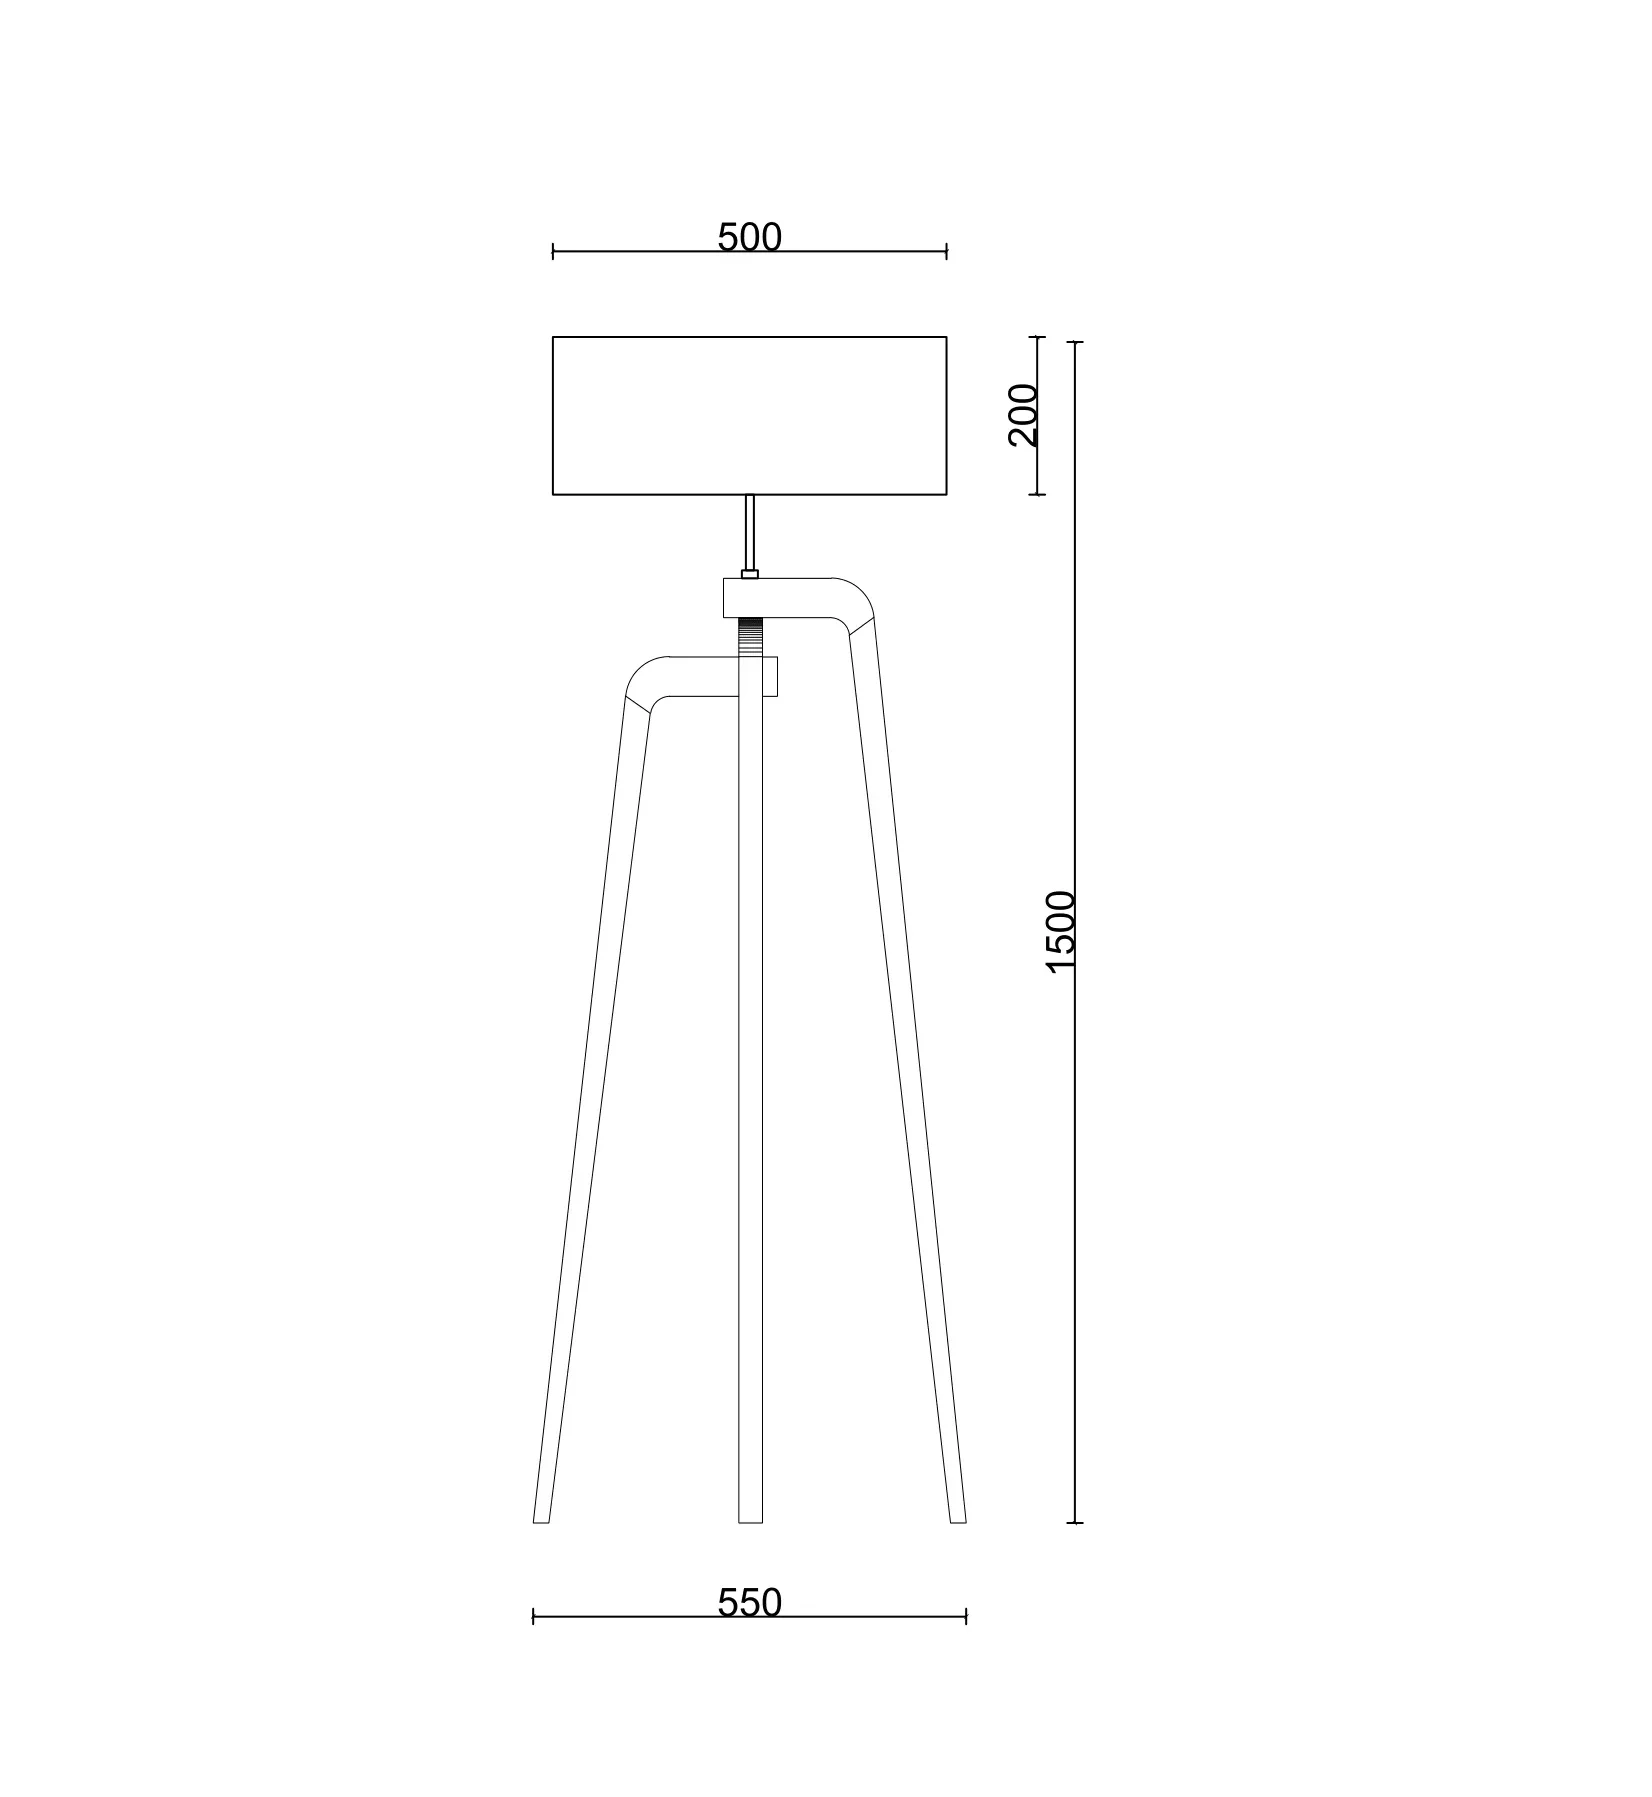 Iris - Rinocca (rinocca iris floor lamp blueprint e1708670455452)